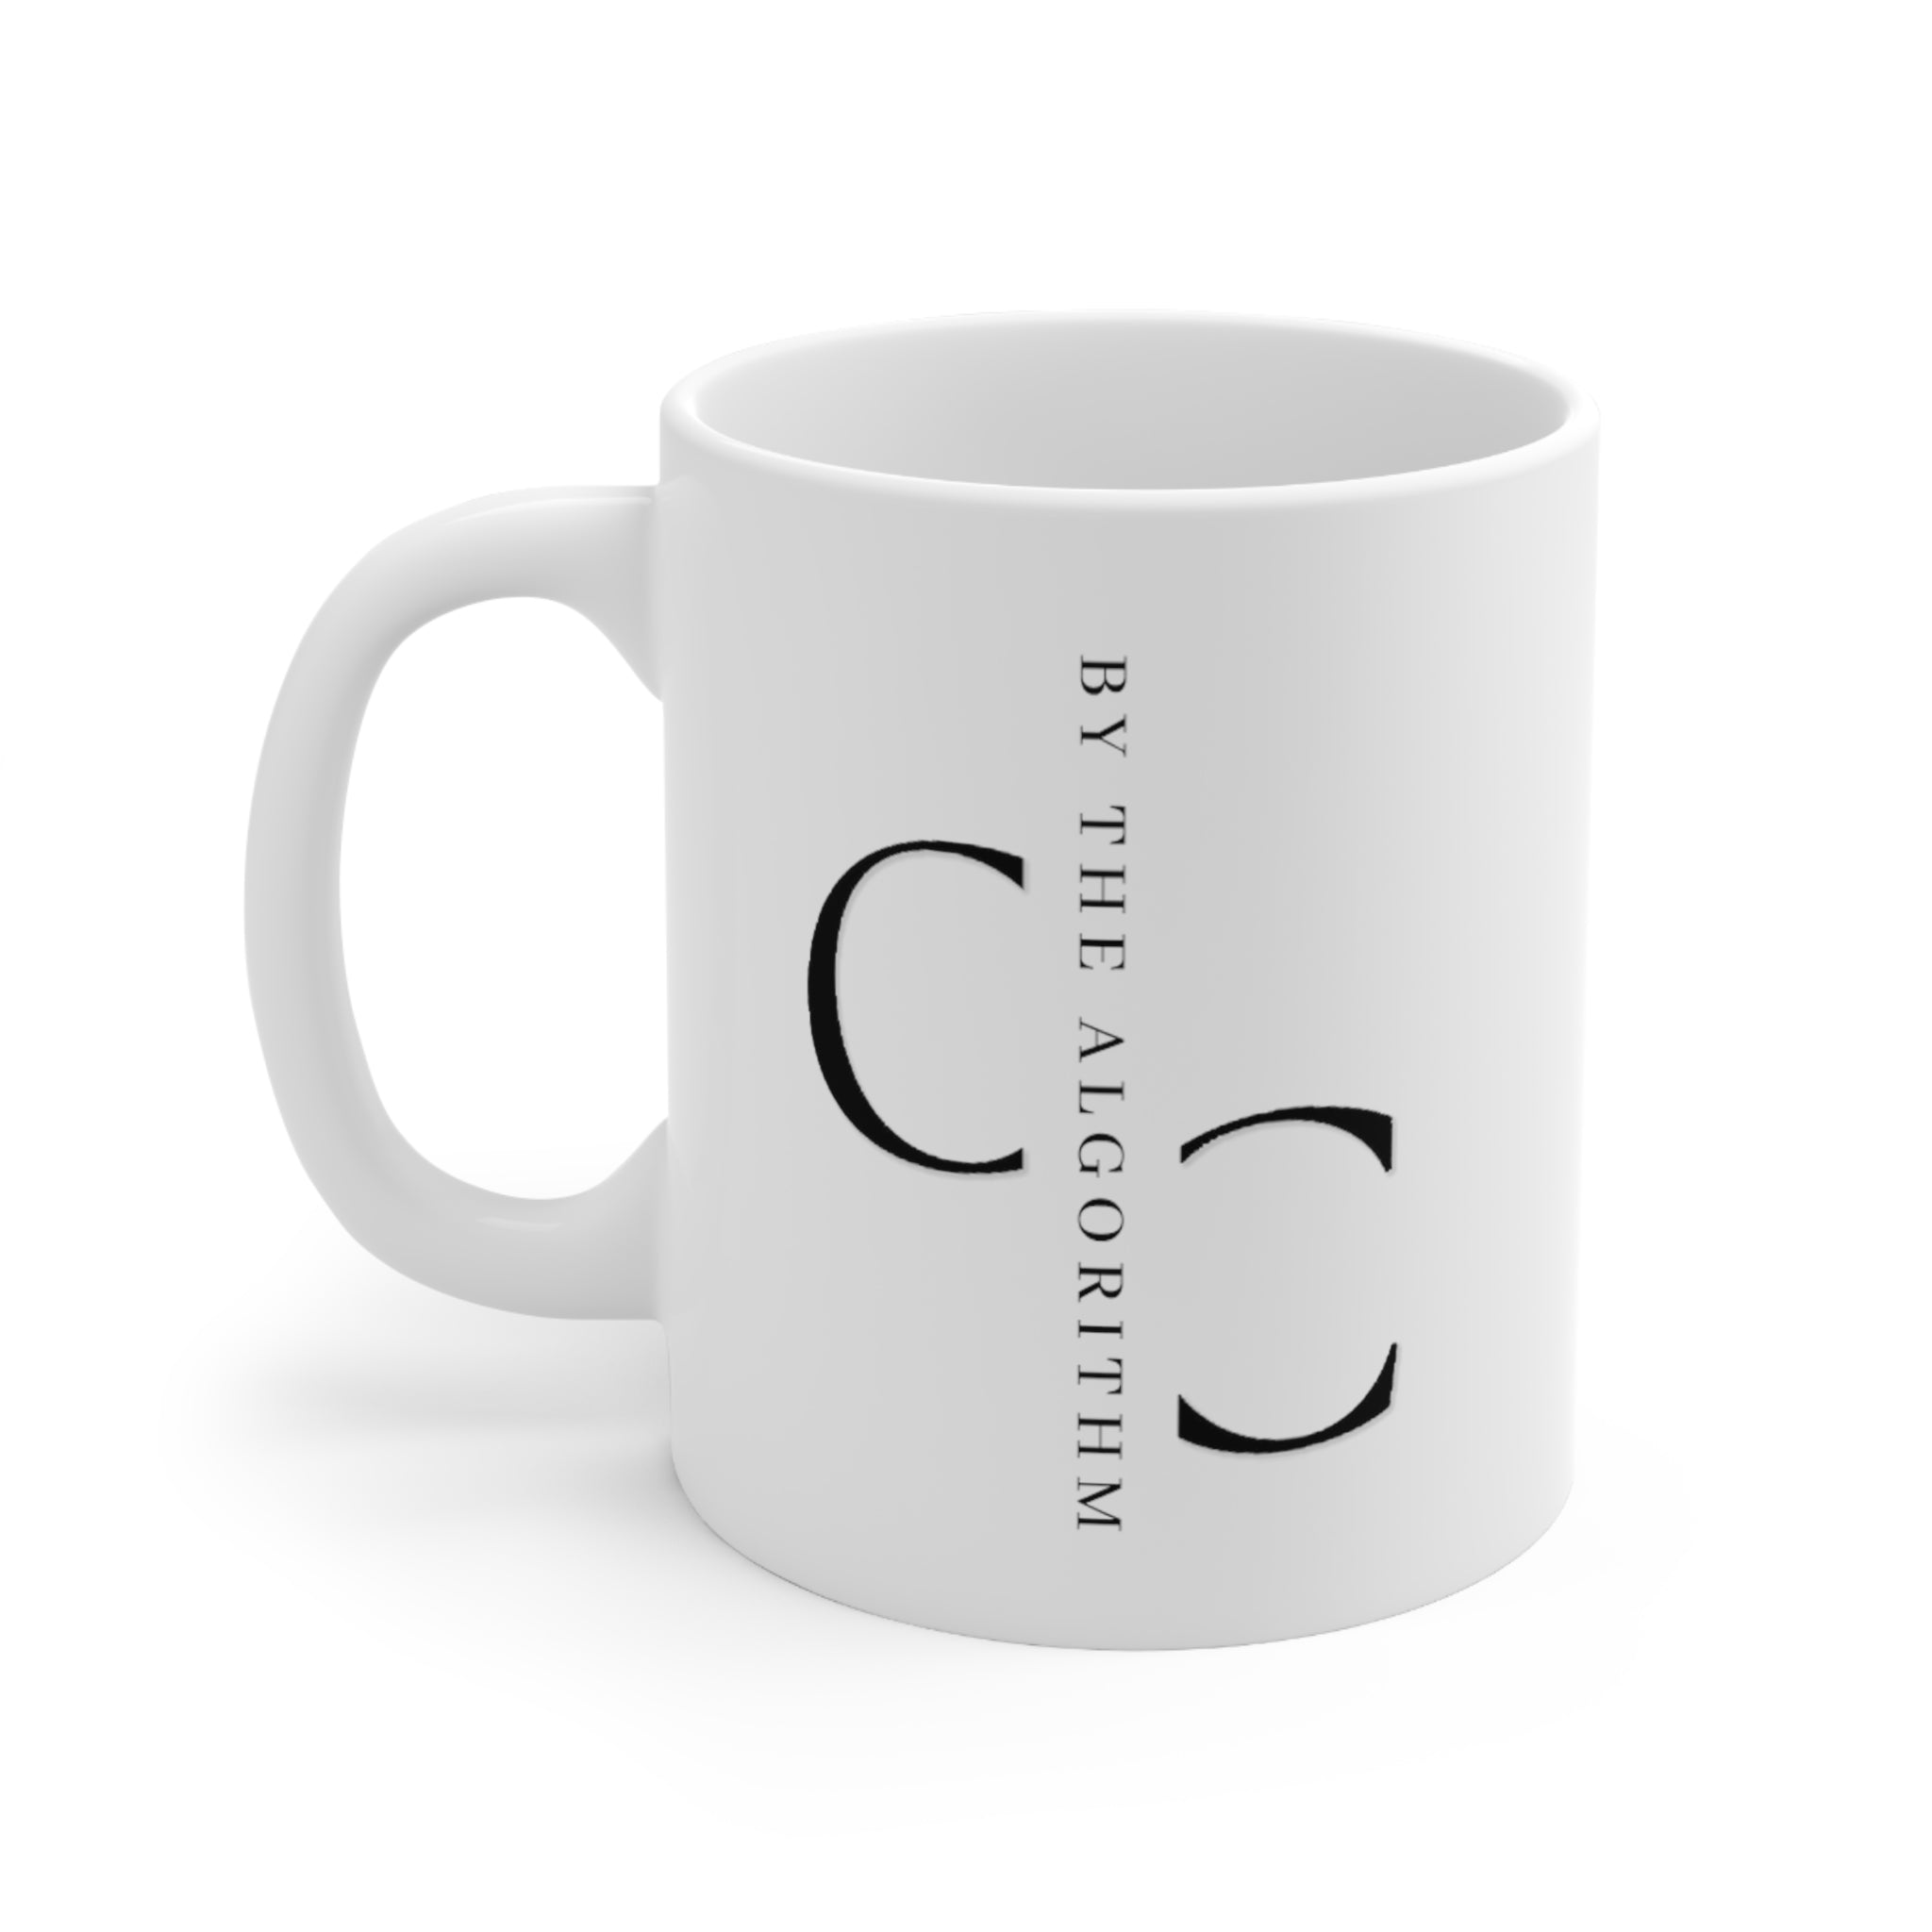 Let's Merge Our Code. Over Chai. Ceramic Mug 11oz